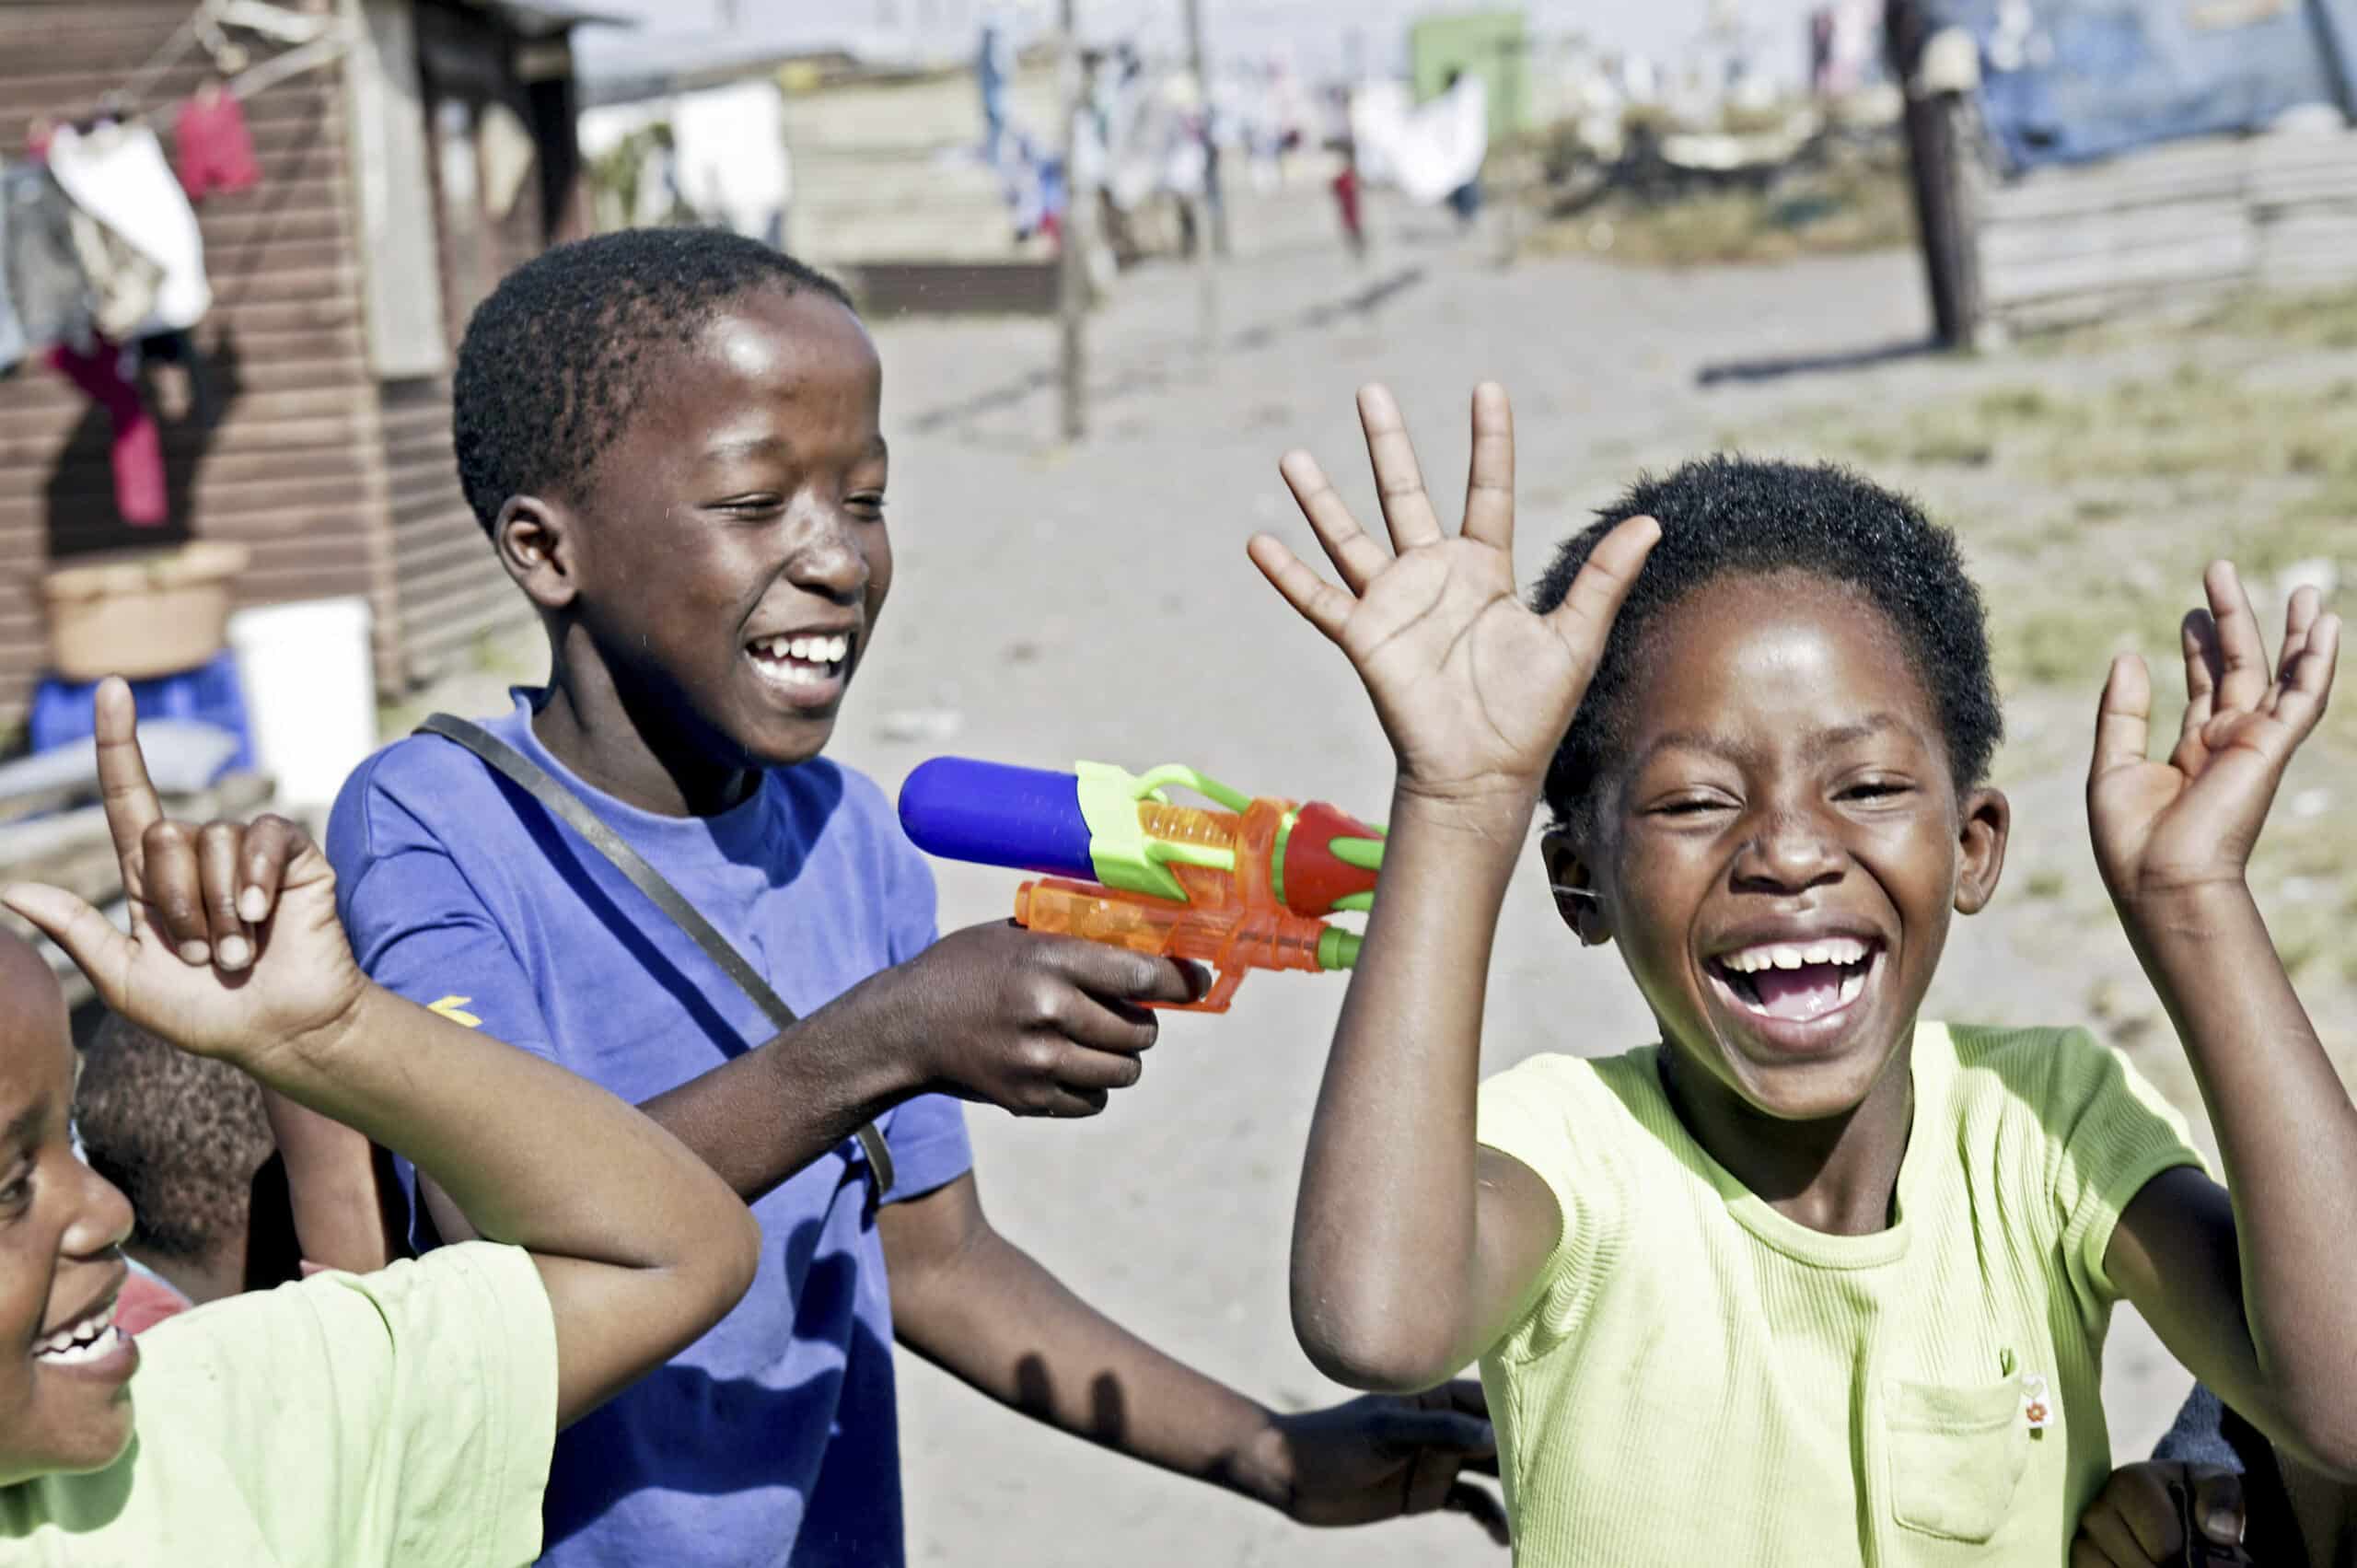 Drei Kinder spielen an einem sonnigen Tag in einer rustikalen Umgebung im Freien fröhlich mit einer Wasserpistole, und in ihren Gesichtern ist Lachen und Aufregung deutlich zu erkennen. © Fotografie Tomas Rodriguez